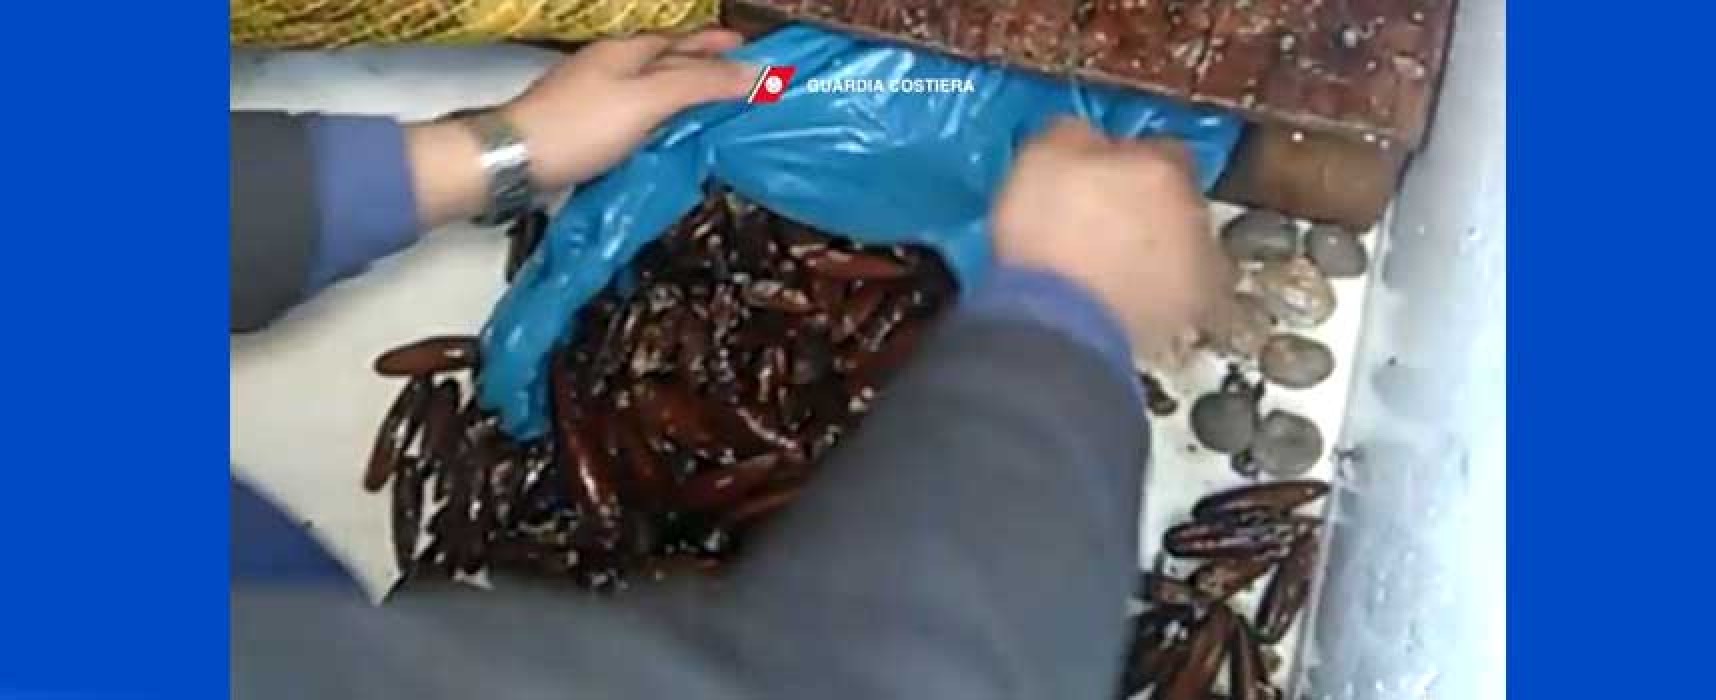 Sequestrati 50 chili di datteri di mare, denunciato un pregiudicato biscegliese / VIDEO e FOTO